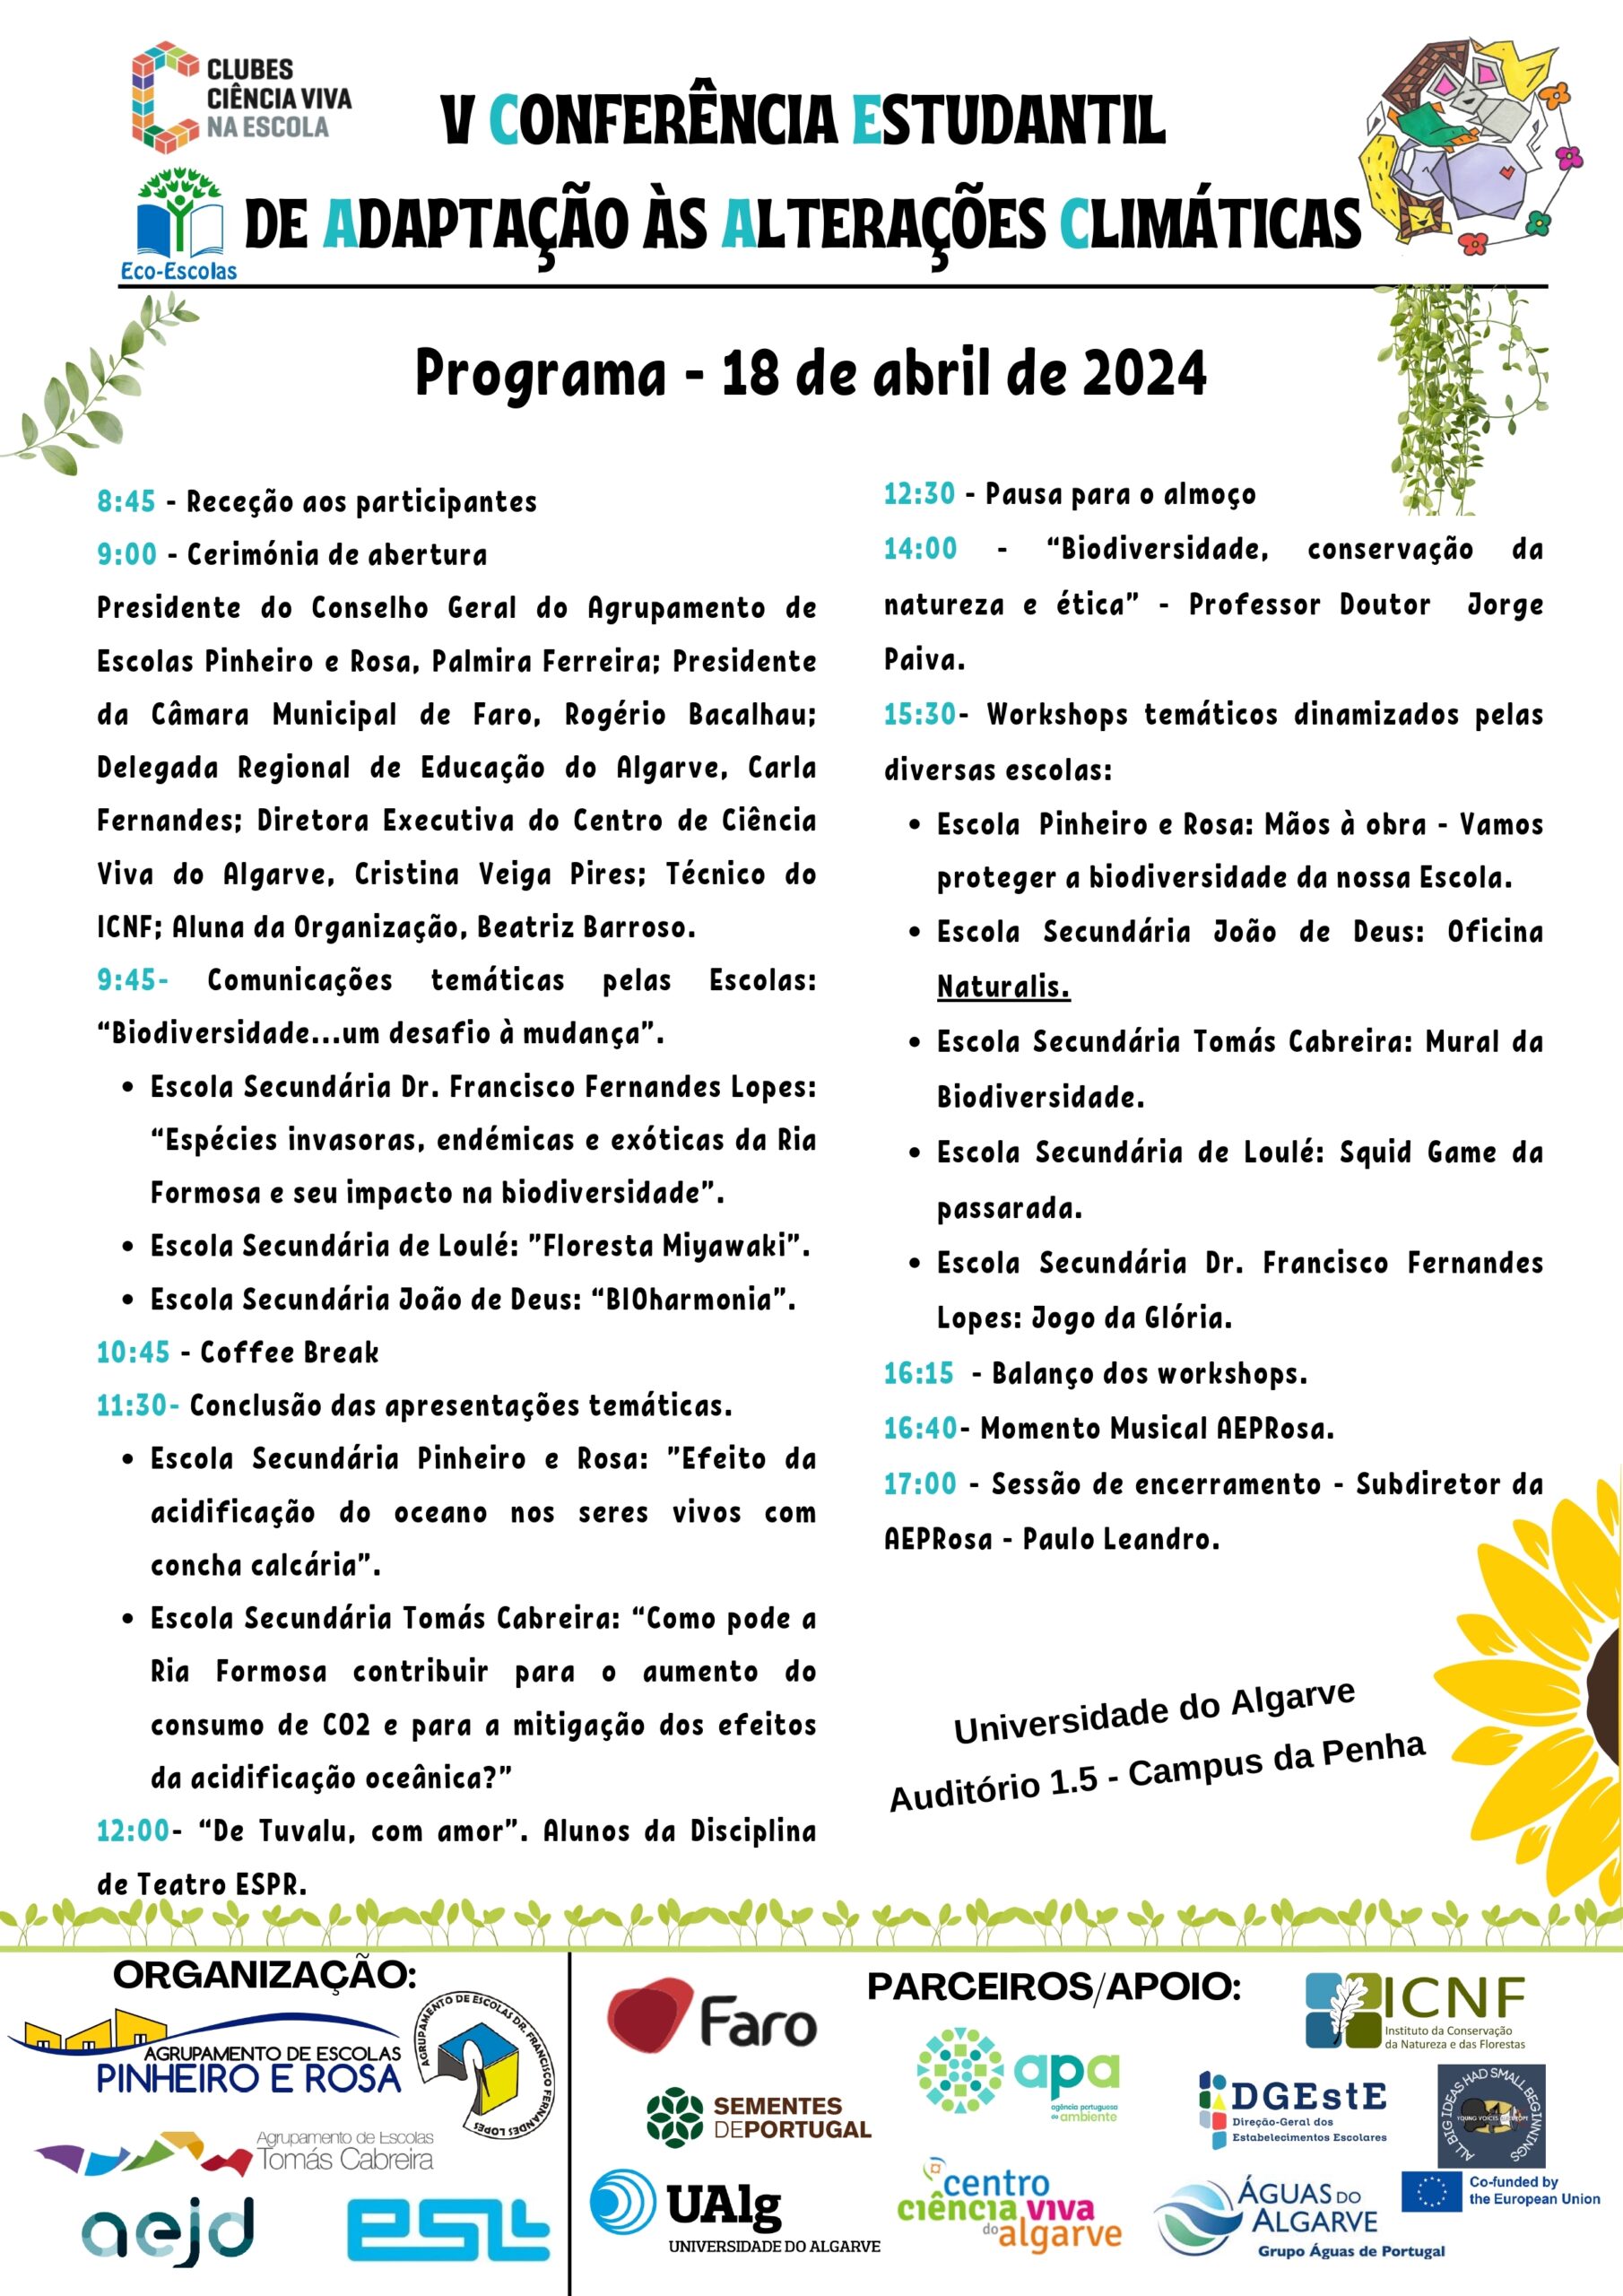 Este ano, a conferência vai contar com a participação de alunos das escolas secundárias de Faro, Loulé e Olhão